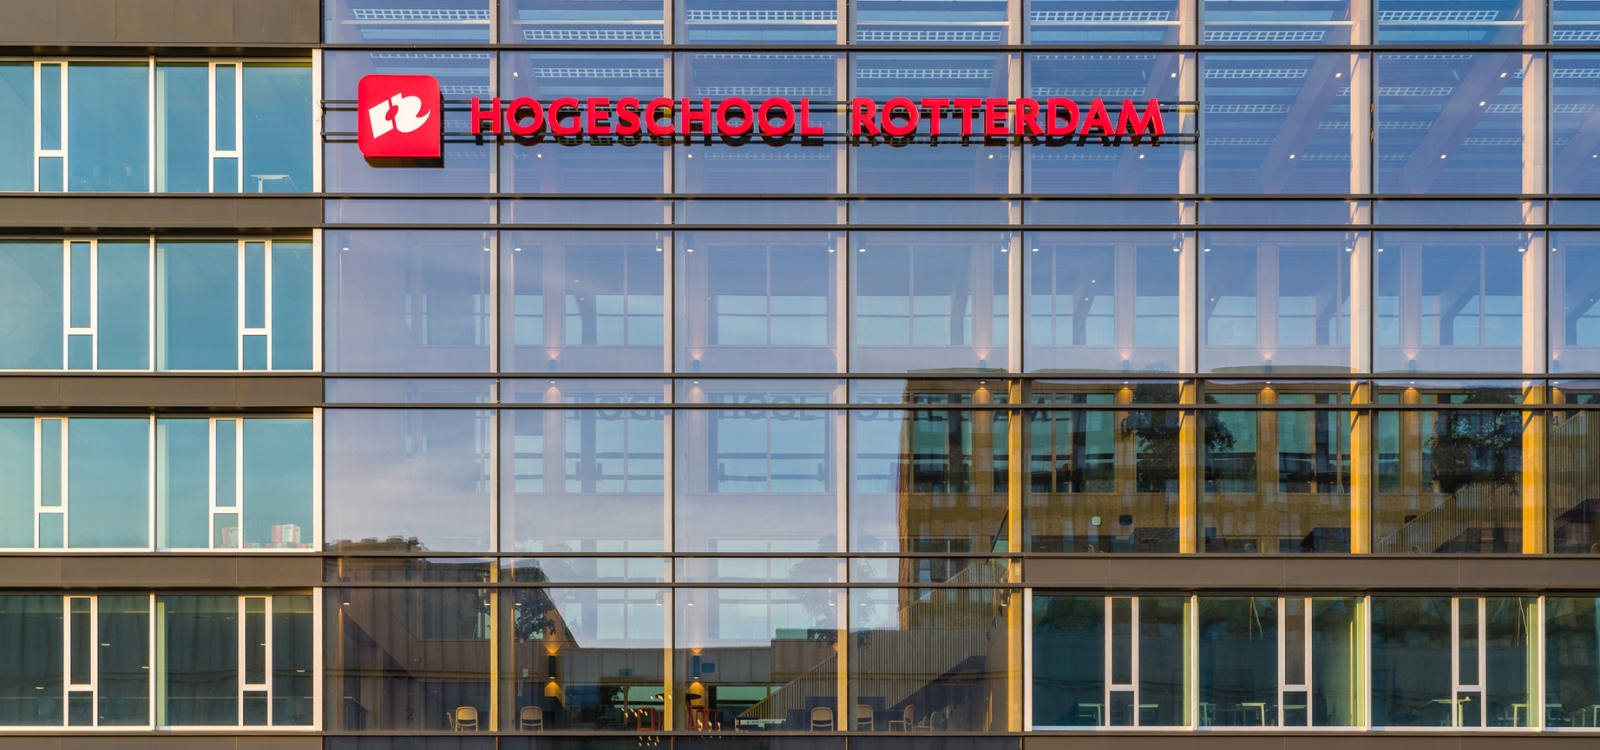 Hogeschool Rotterdam 1600x750 px 3